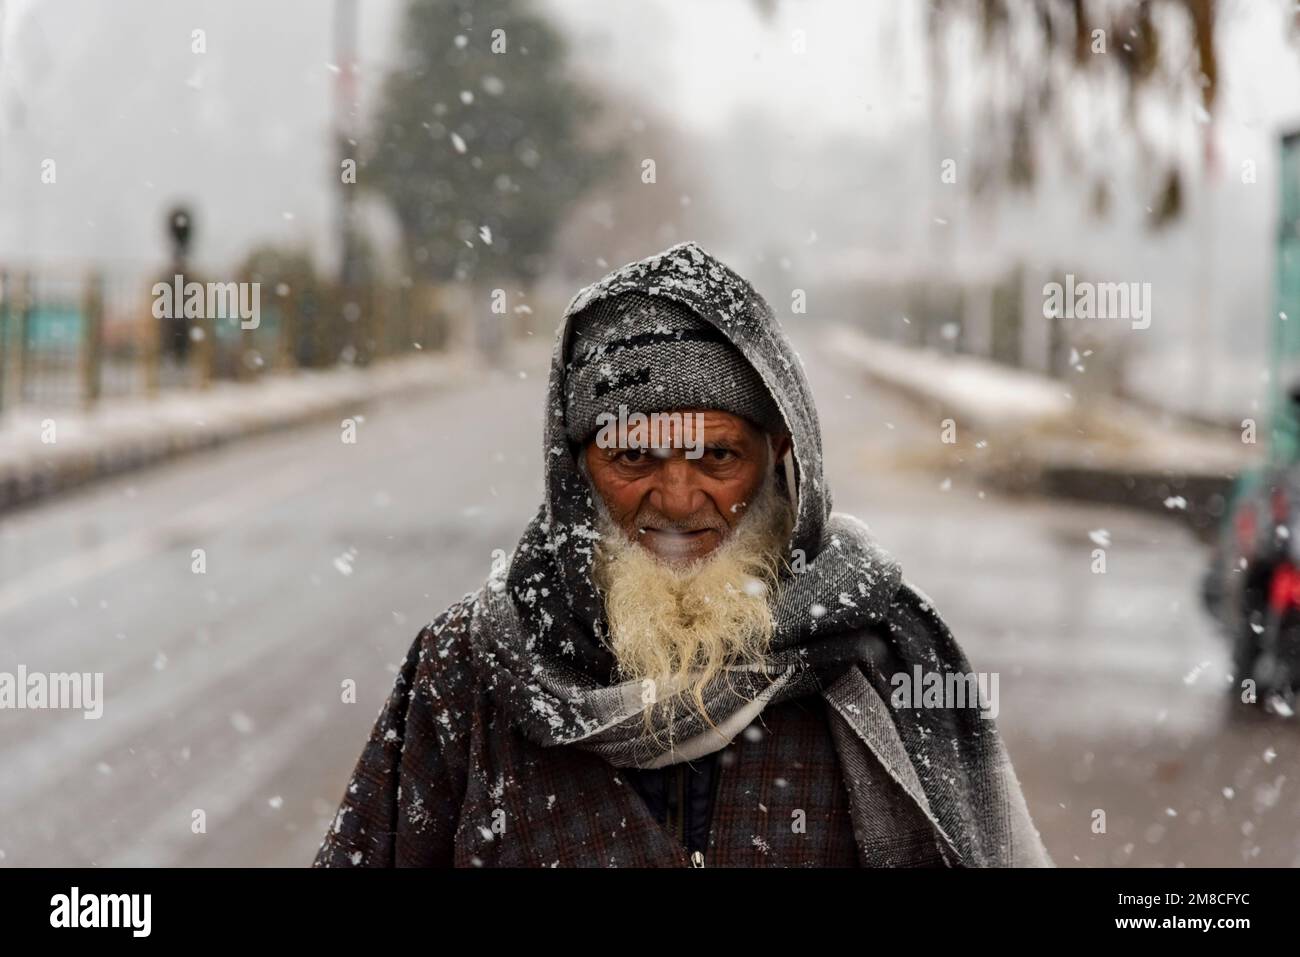 Un uomo anziano guarda mentre cammina in mezzo alla nevicata. Il Kashmir ha ricevuto nevicate fresche, con le cali più alte della valle che hanno ricevuto nevicate da moderate a pesanti e nevicate da leggere a moderate in pianura, causando una visibilità distruttiva. Questo ha influito sulle operazioni di volo insieme alla chiusura dell'autostrada nazionale Srinagar-Jammu. Foto Stock